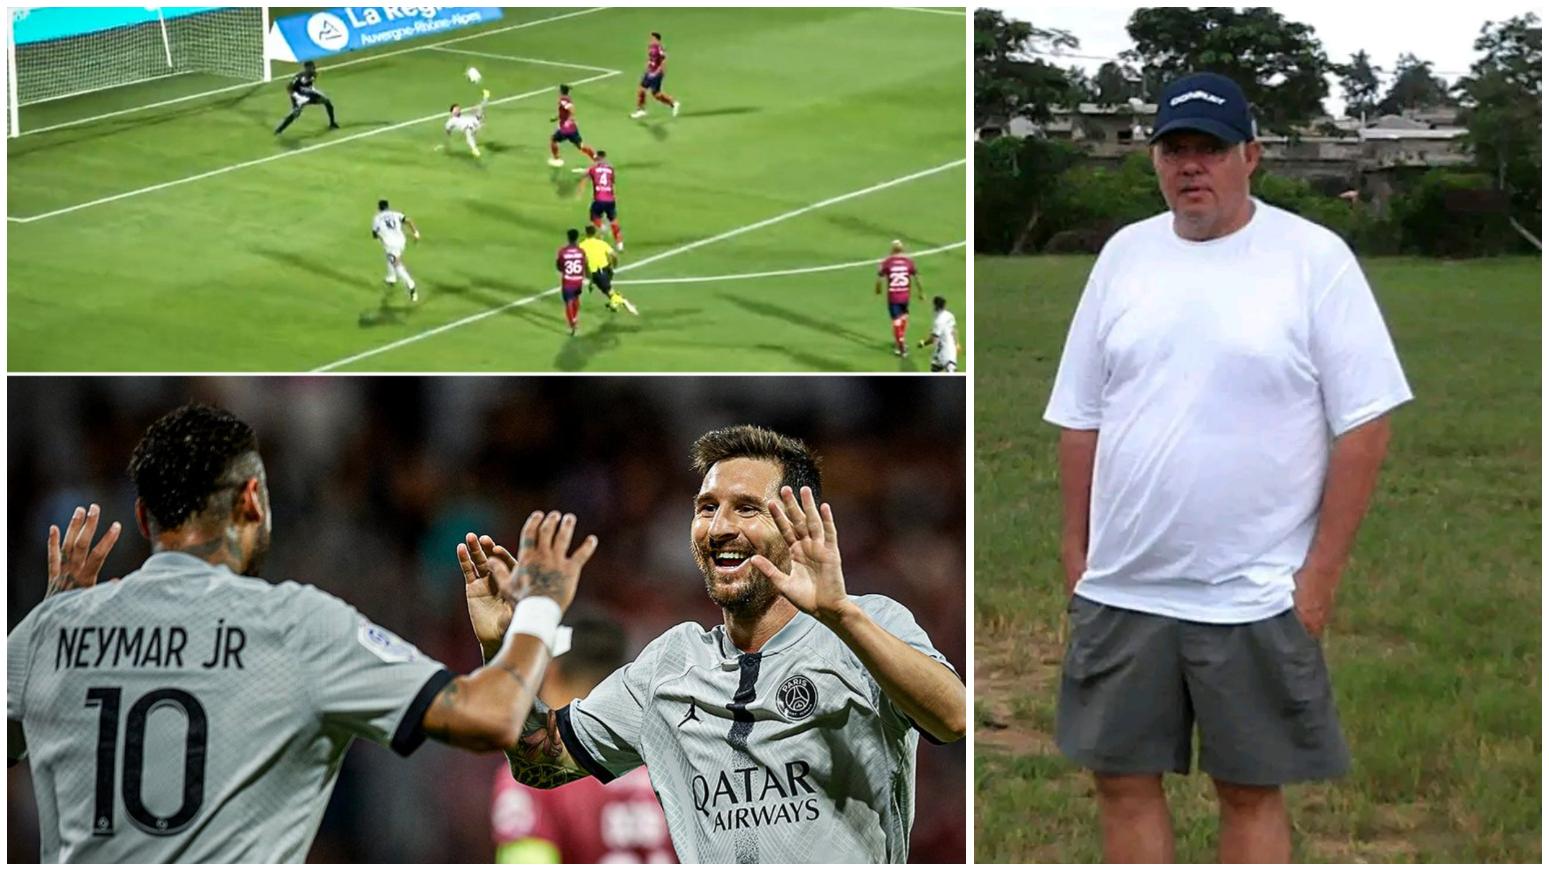 Enfin l’année de l’éclosion de Messi au PSG ? Notre expert Daniel Claesen se prononce